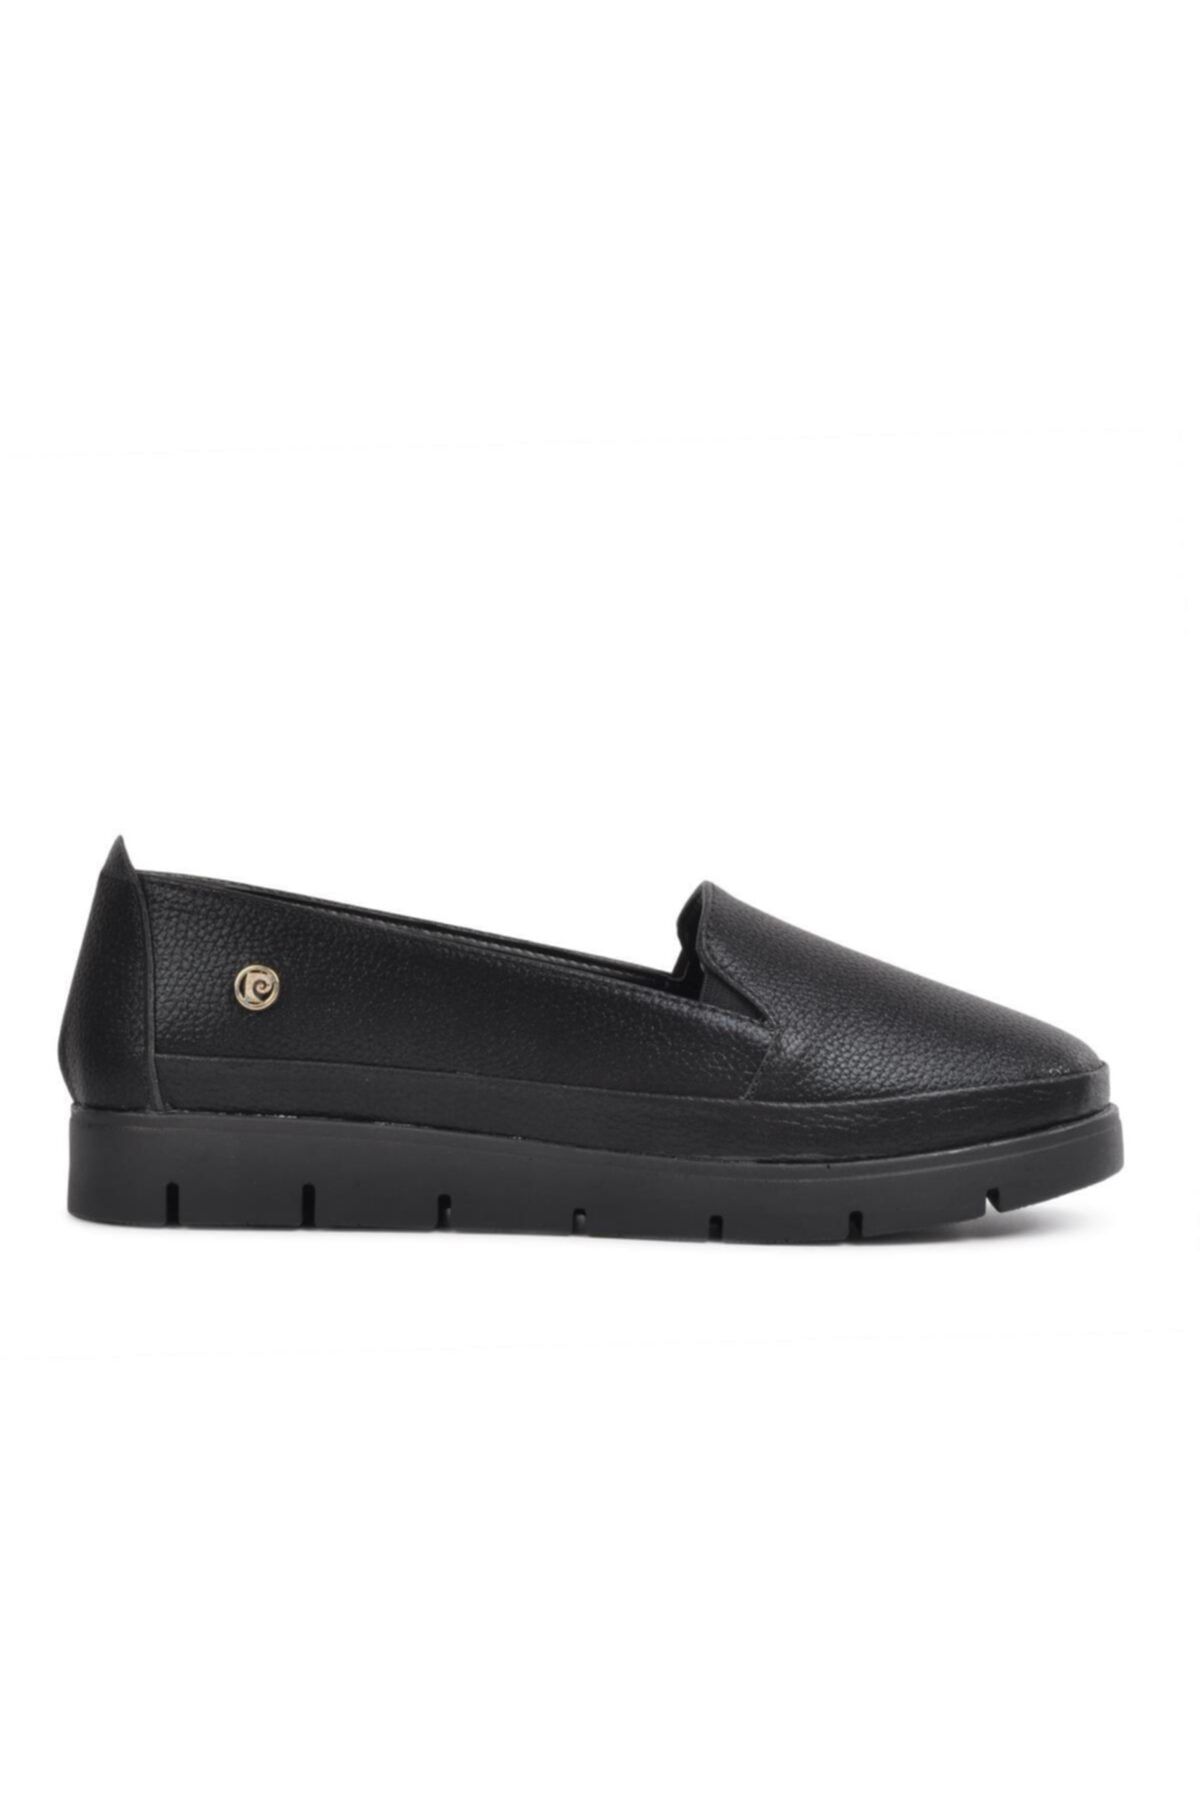 Pierre Cardin Kadın Pc-51233 Siyah Comfort Günlük Ayakkabı